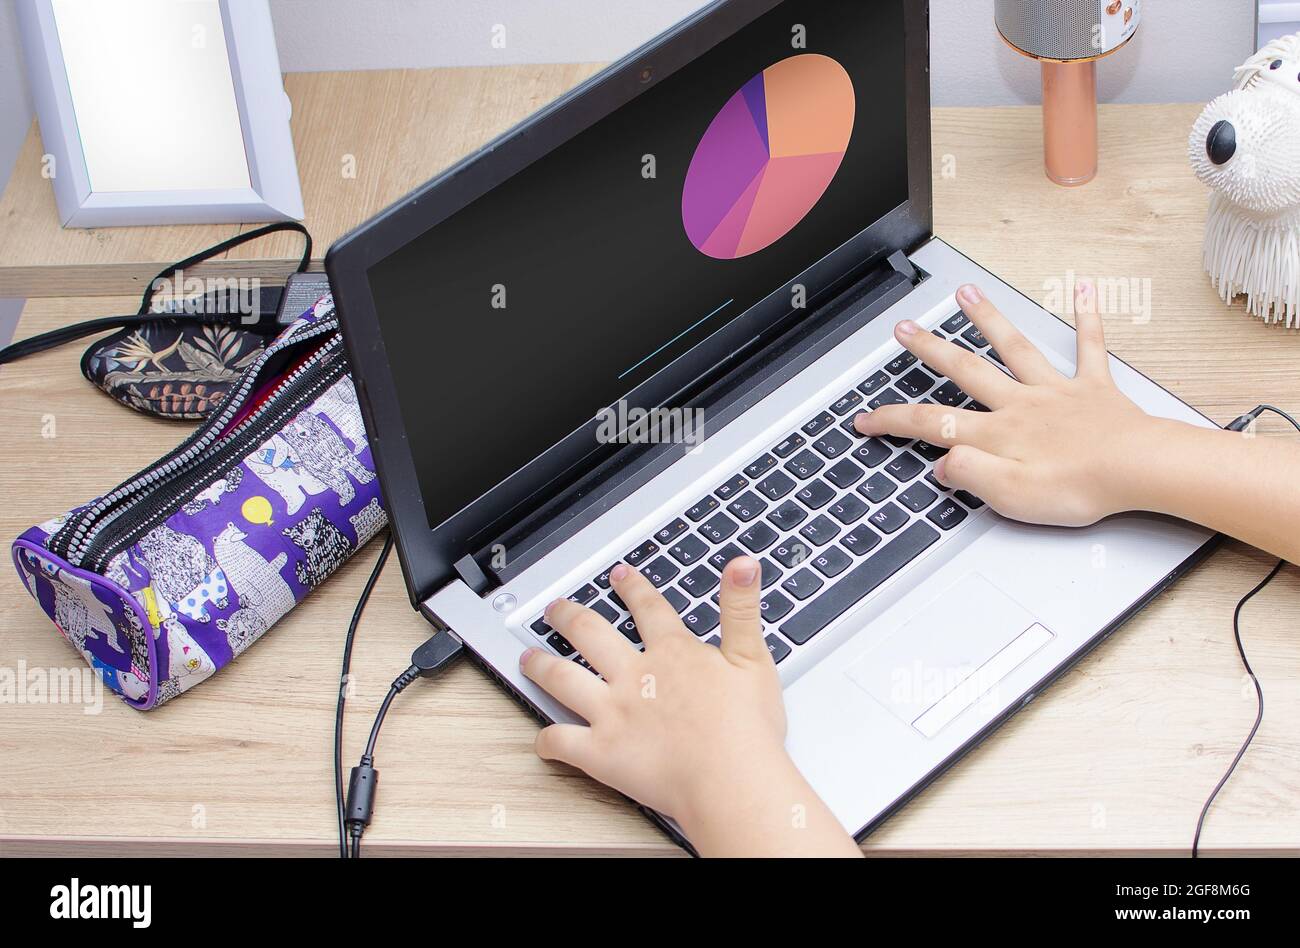 Primo piano delle dita di una ragazza su una tastiera di un notebook Foto Stock